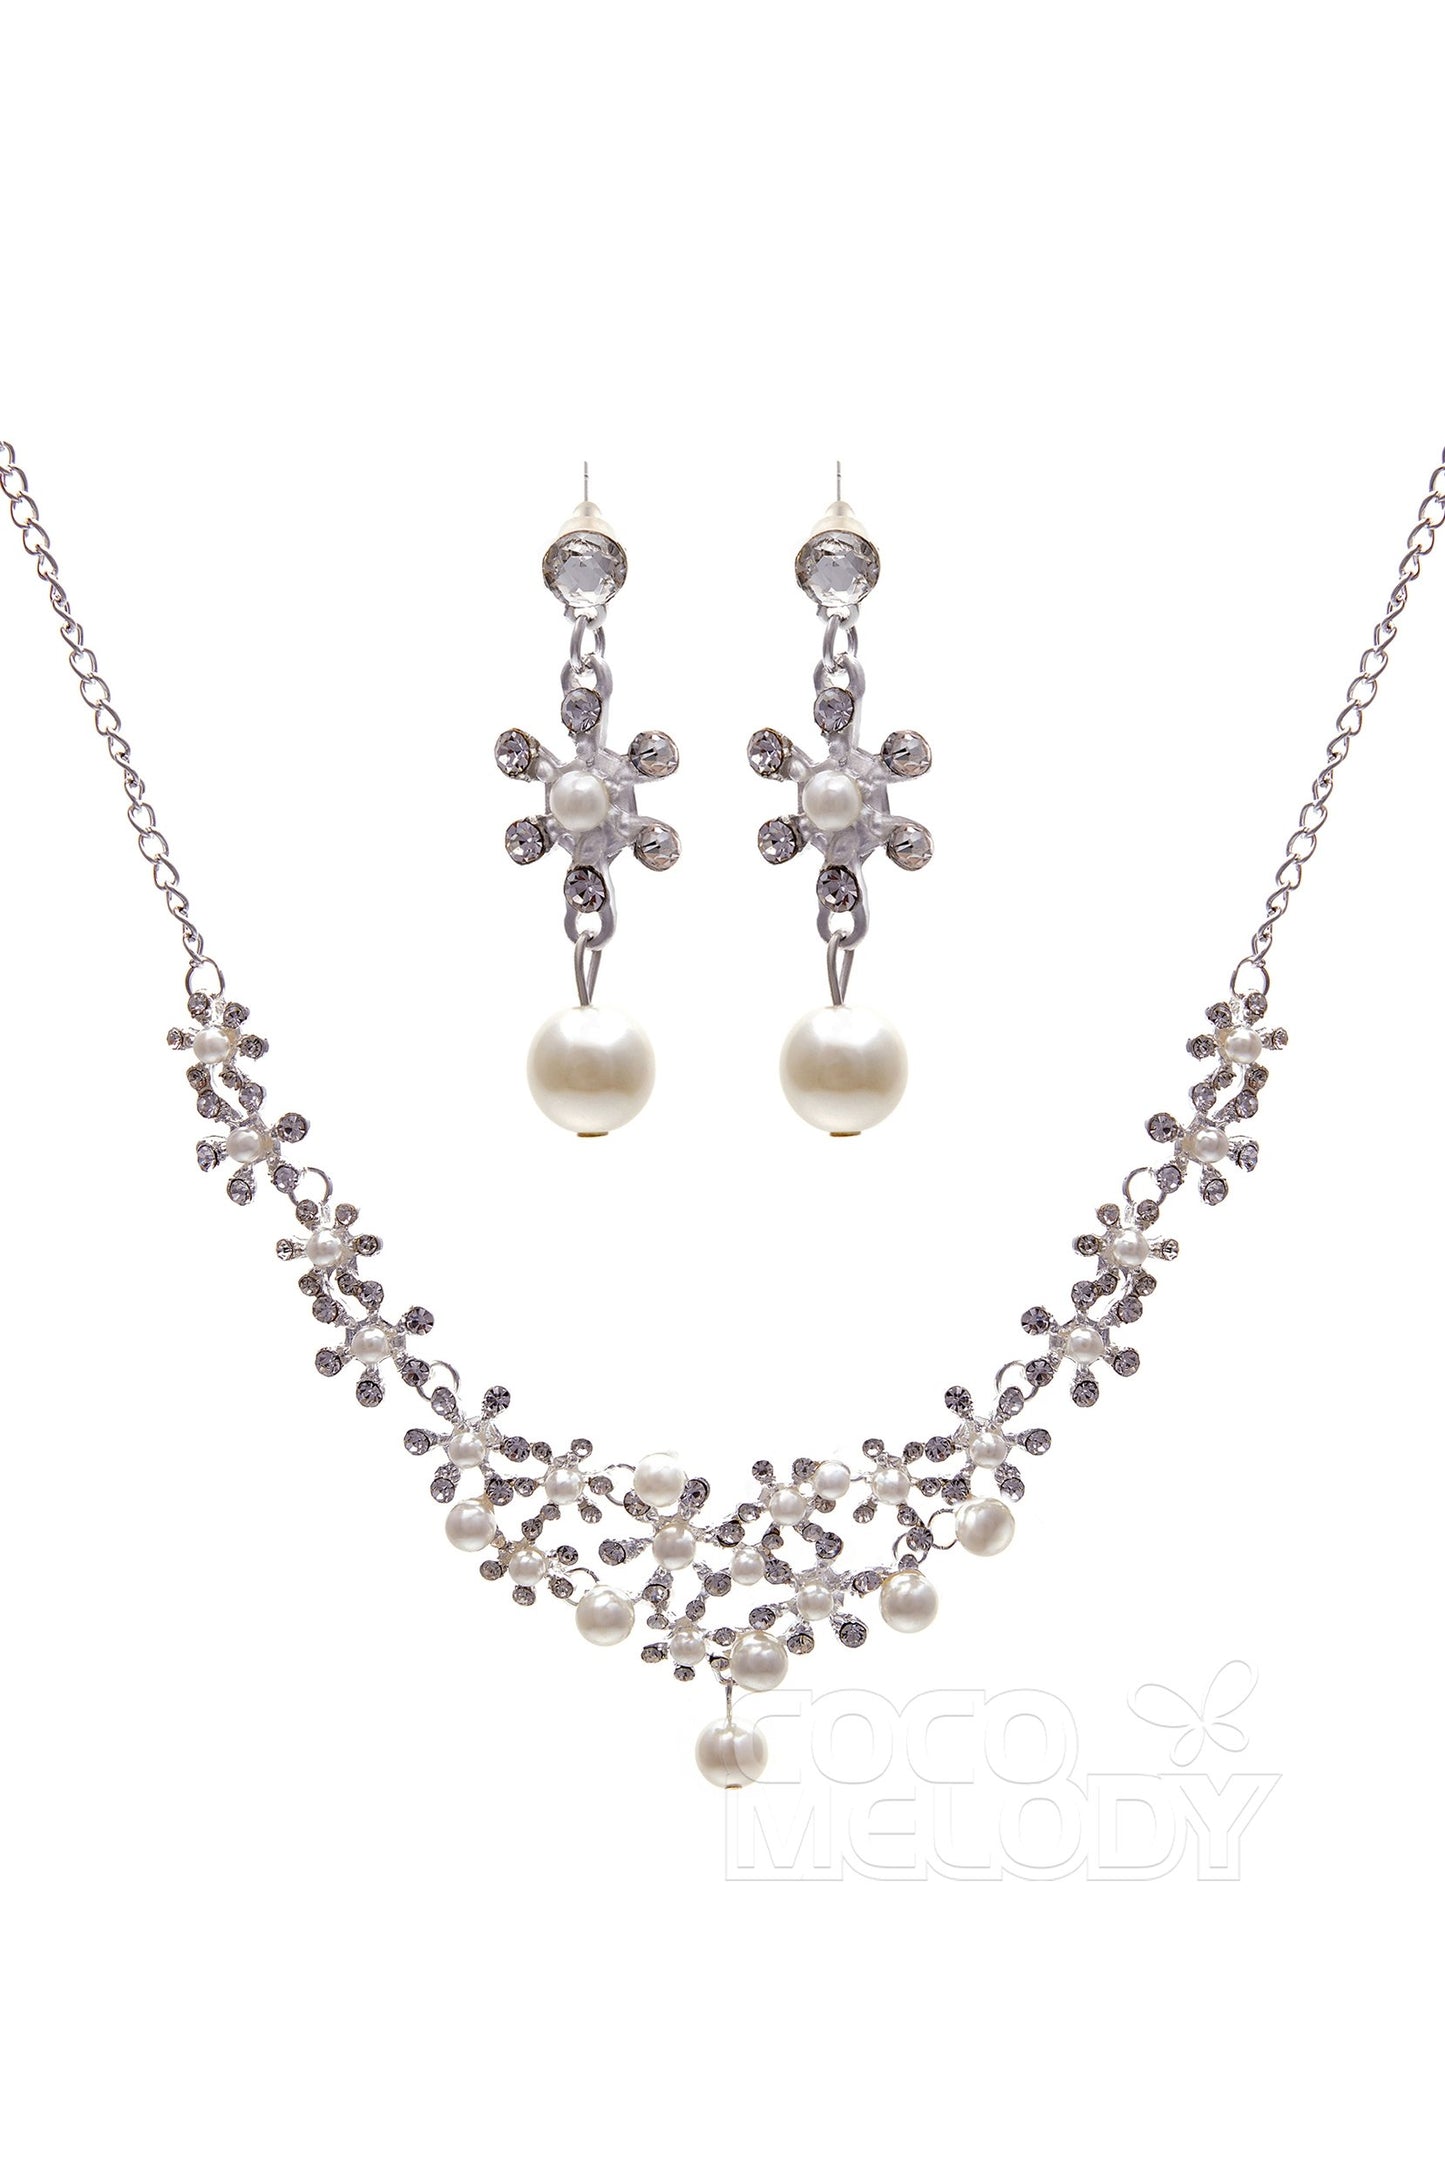 Rhinestone Pearl Wedding Necklace Earrings Jewelry CY0047